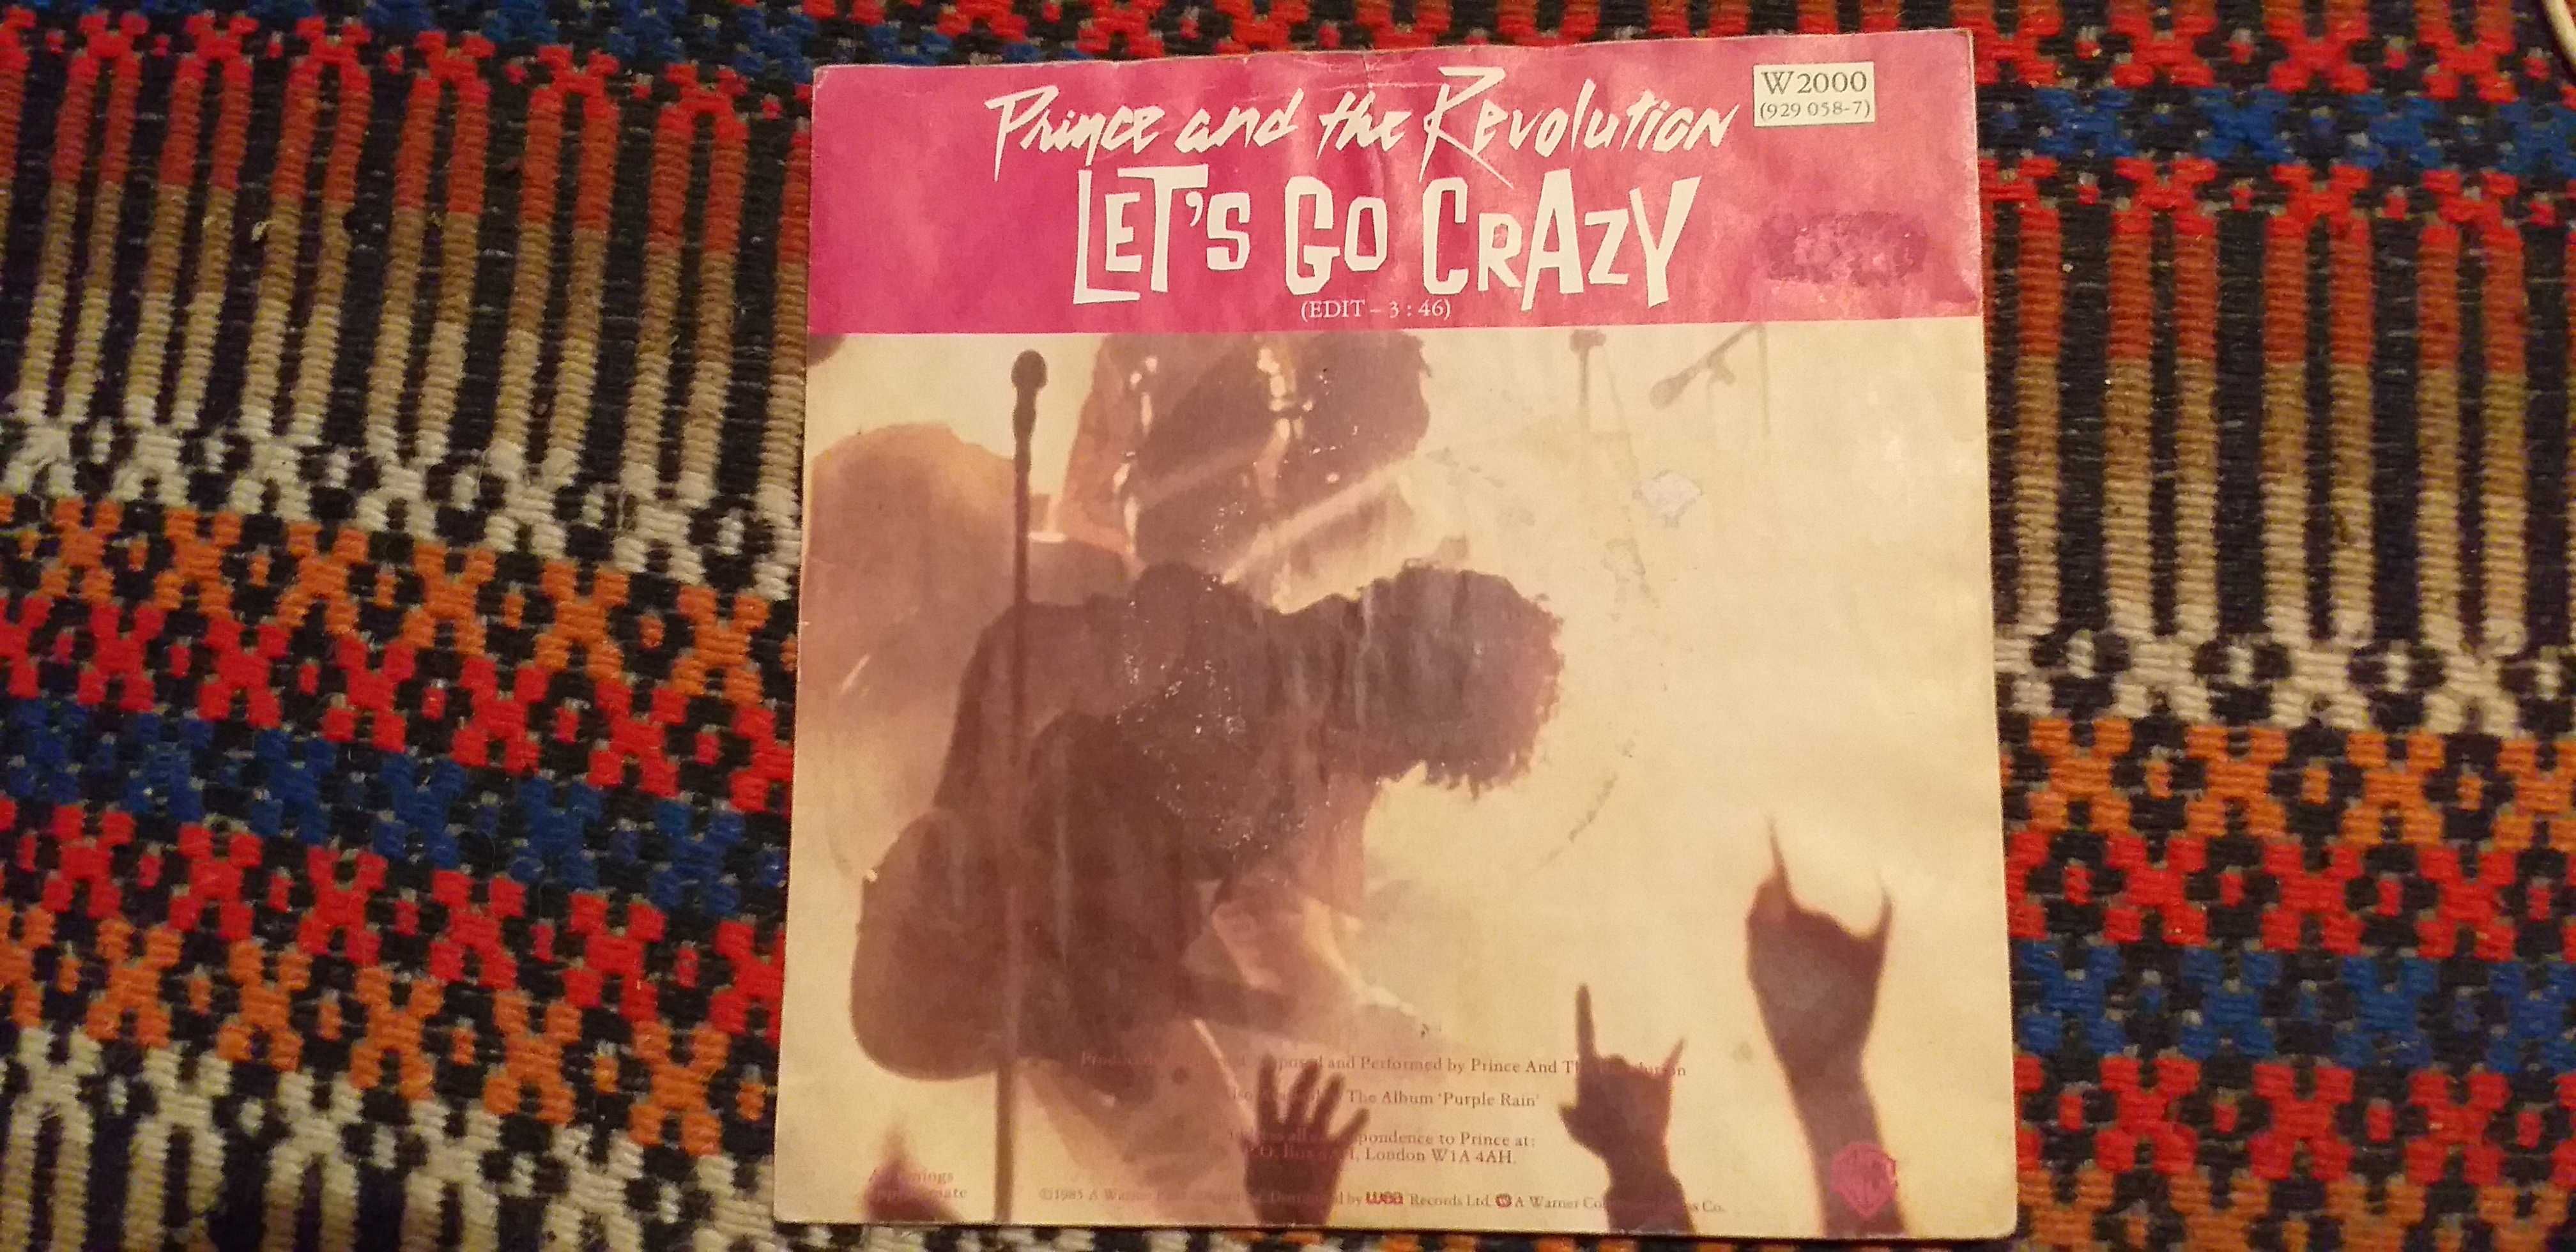 Prince and the Revolution - Let's go crazy - portes incluidos